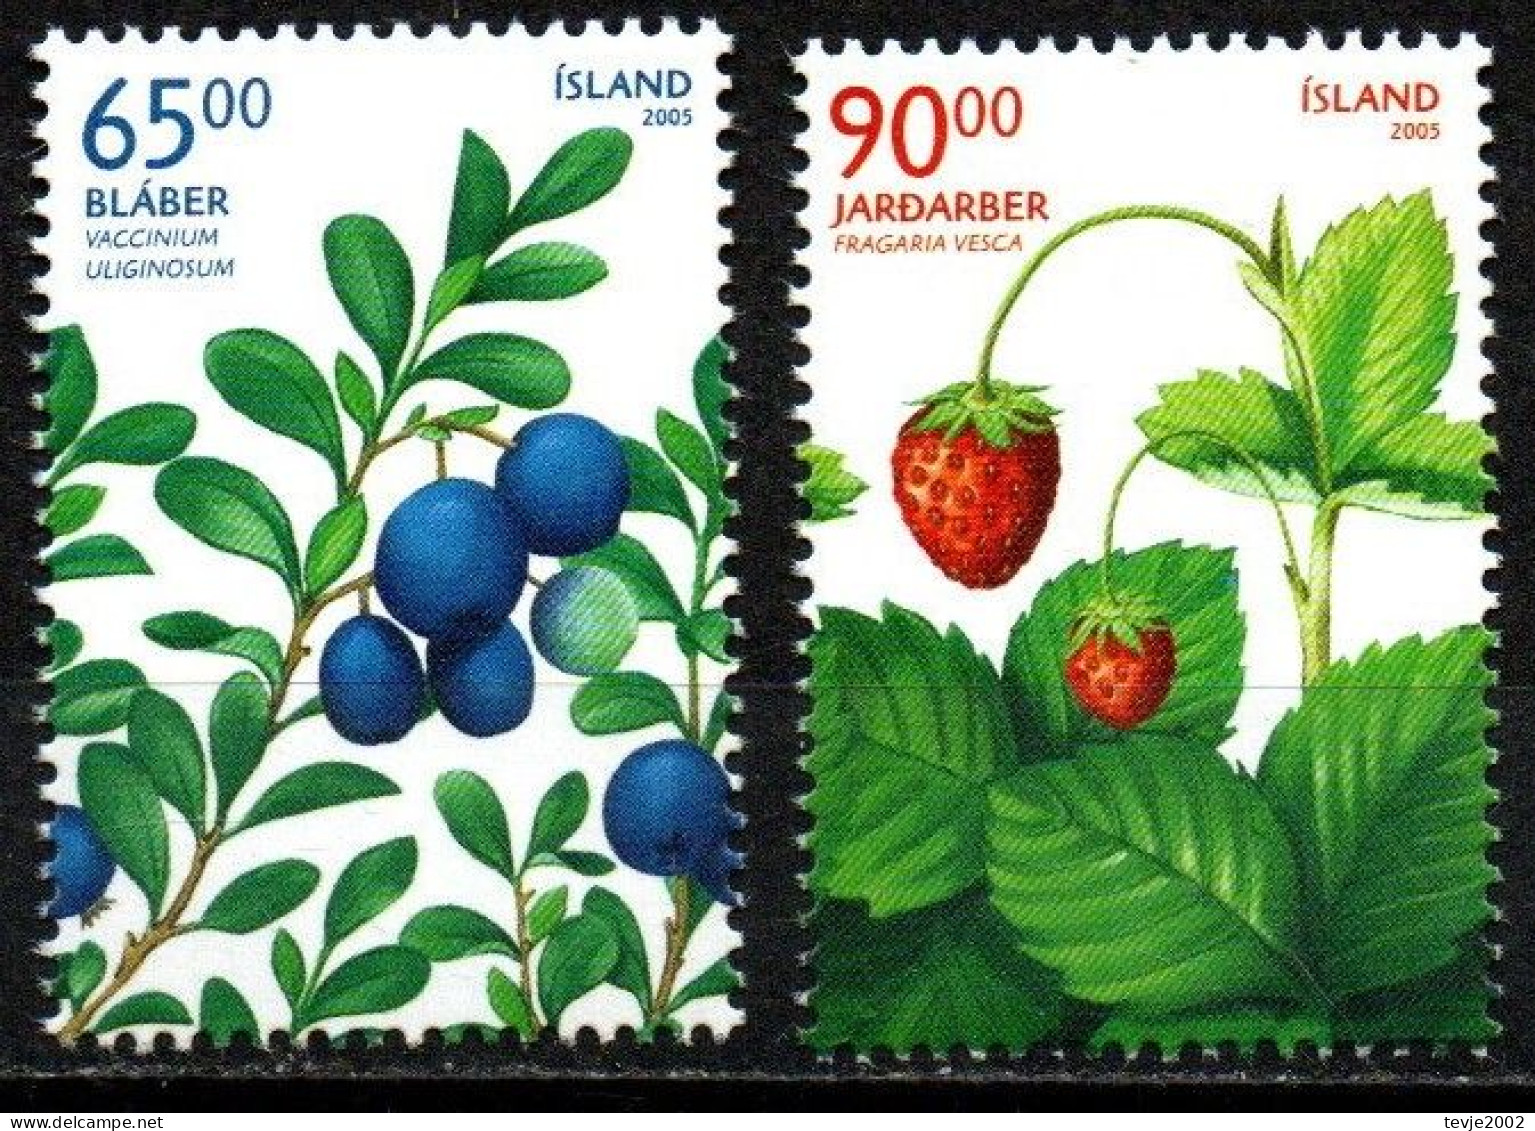 Island 2005 - Mi.Nr. 1106 - 1107 - Postfrisch MNH - Früchte Obst Beeren Berries - Obst & Früchte